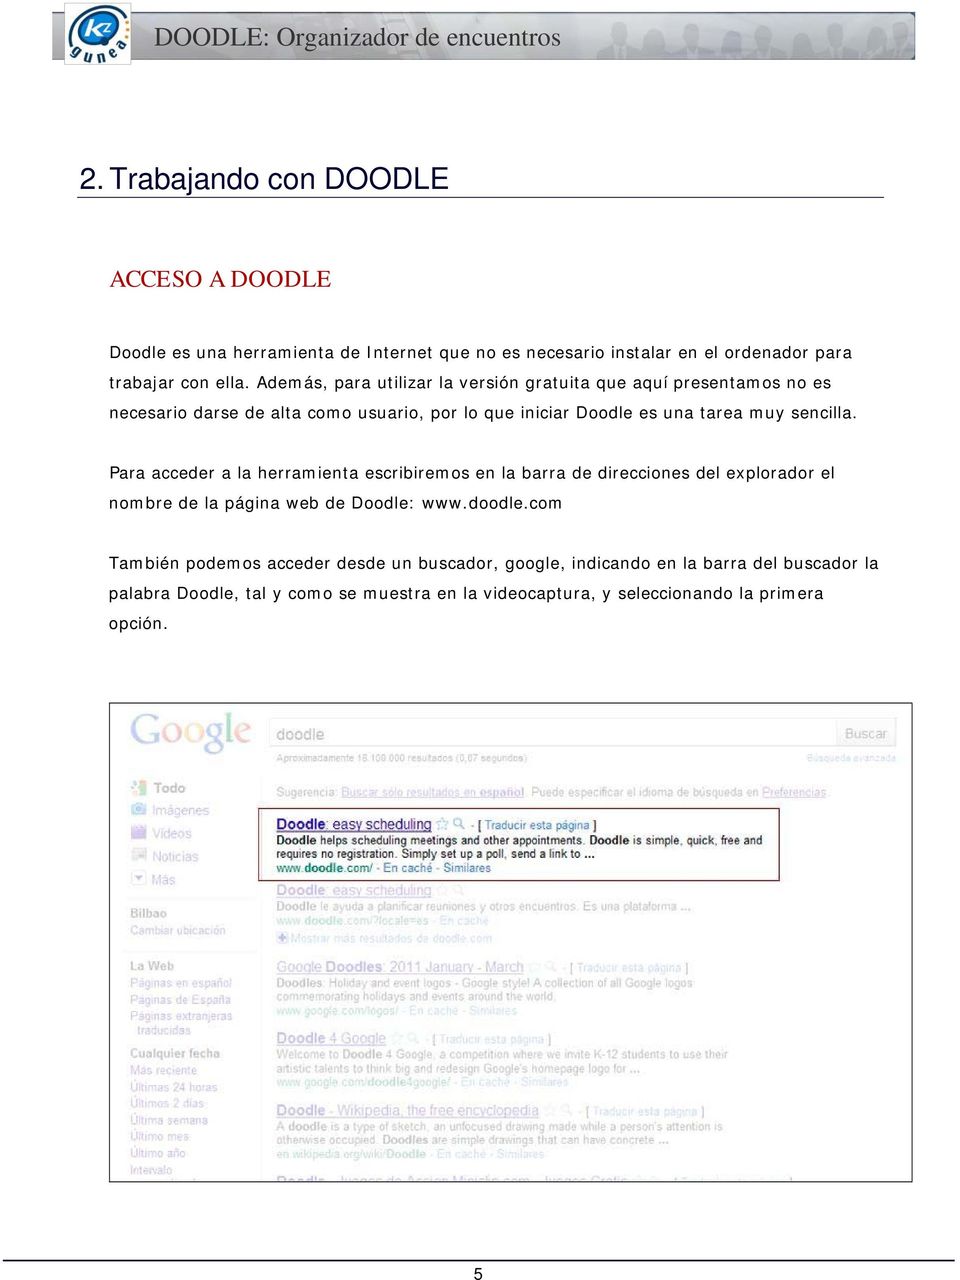 sencilla. Para acceder a la herramienta escribiremos en la barra de direcciones del explorador el nombre de la página web de Doodle: www.doodle.